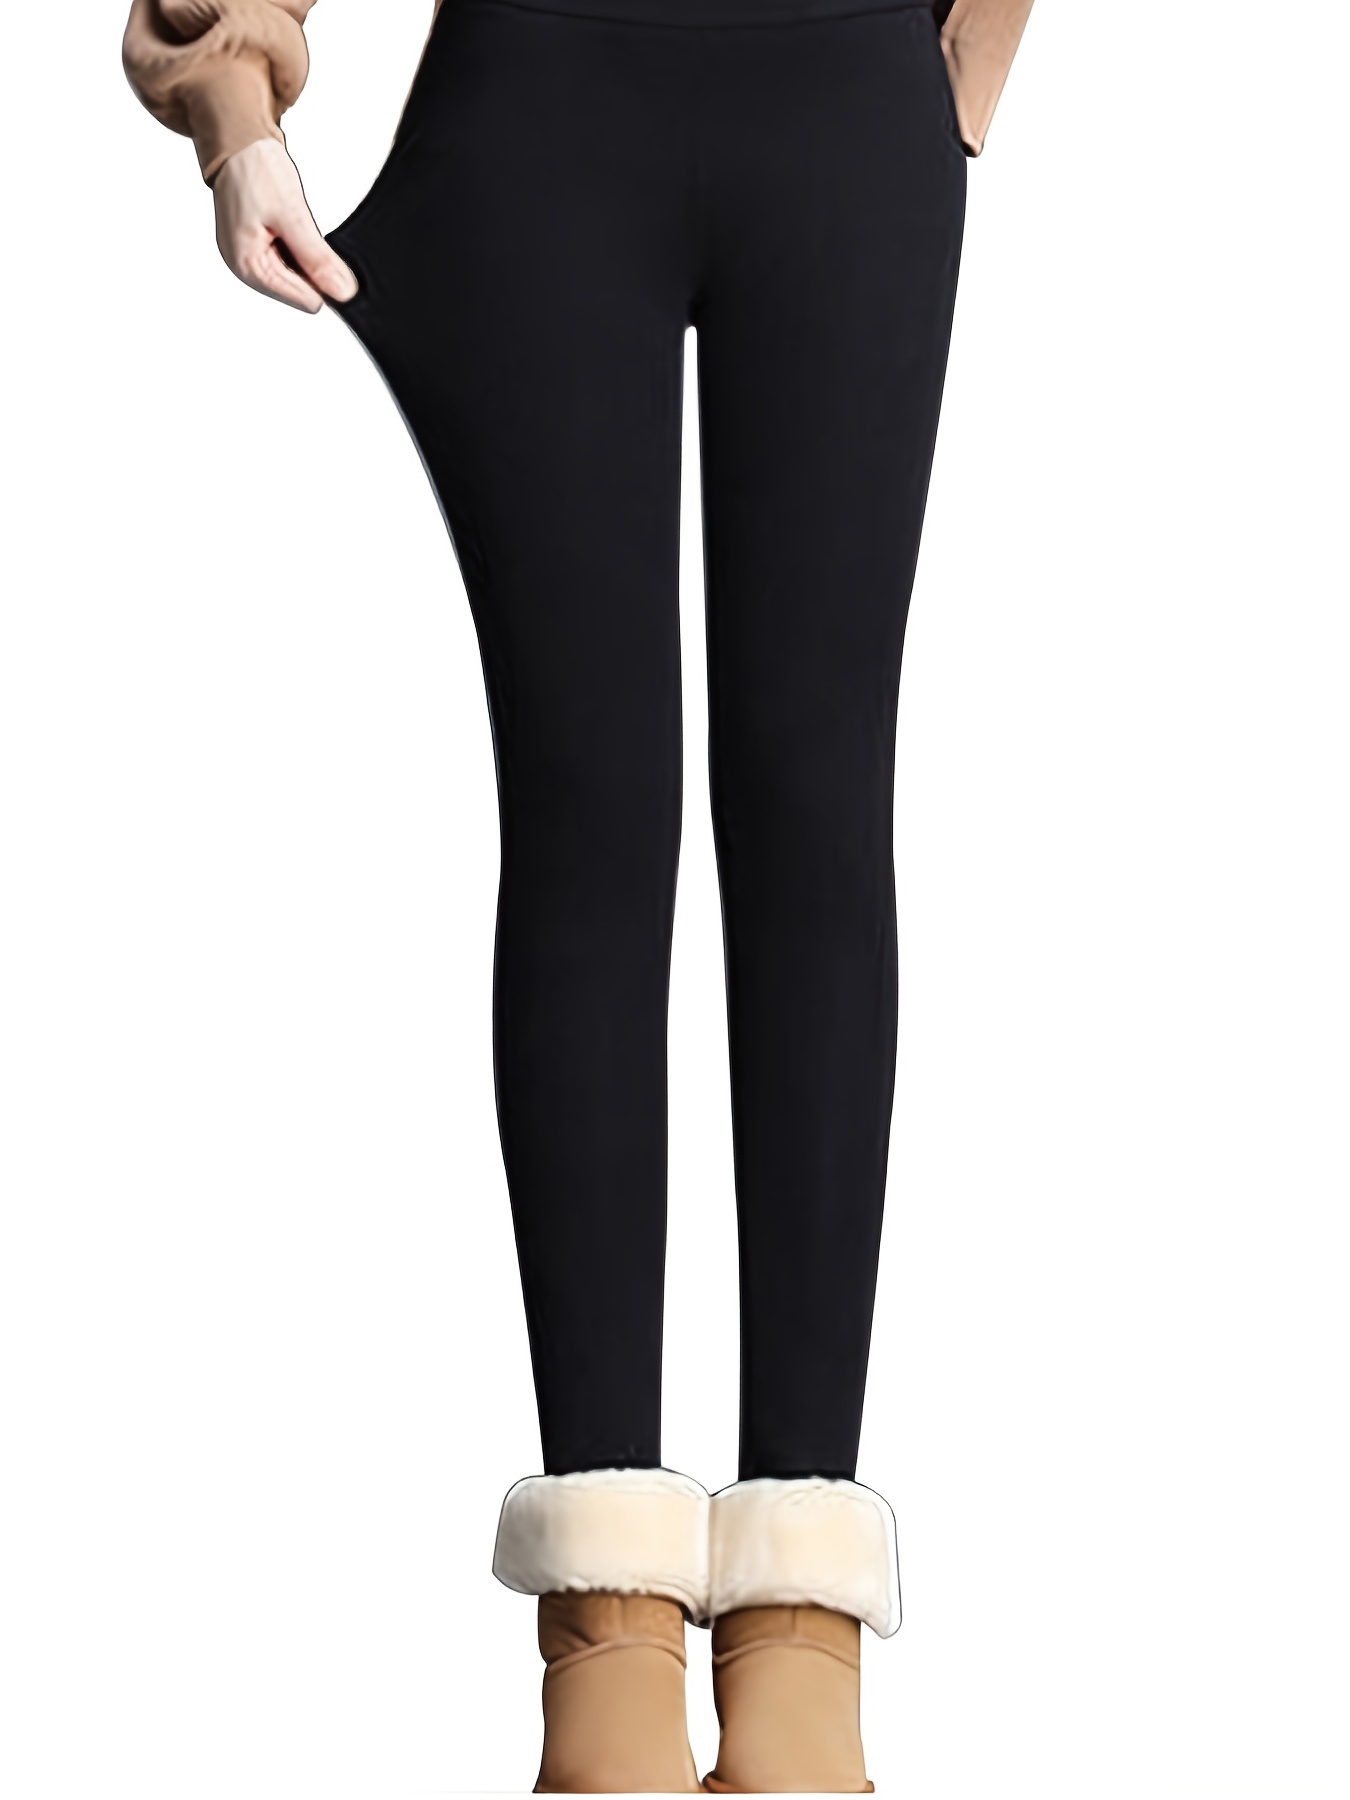 Ice Skate Leggings Skinny Jeans for Women UK Ponytail Holders Black Fleece  Leggings Girls Womens Thermal Trousers Brow : : Fashion